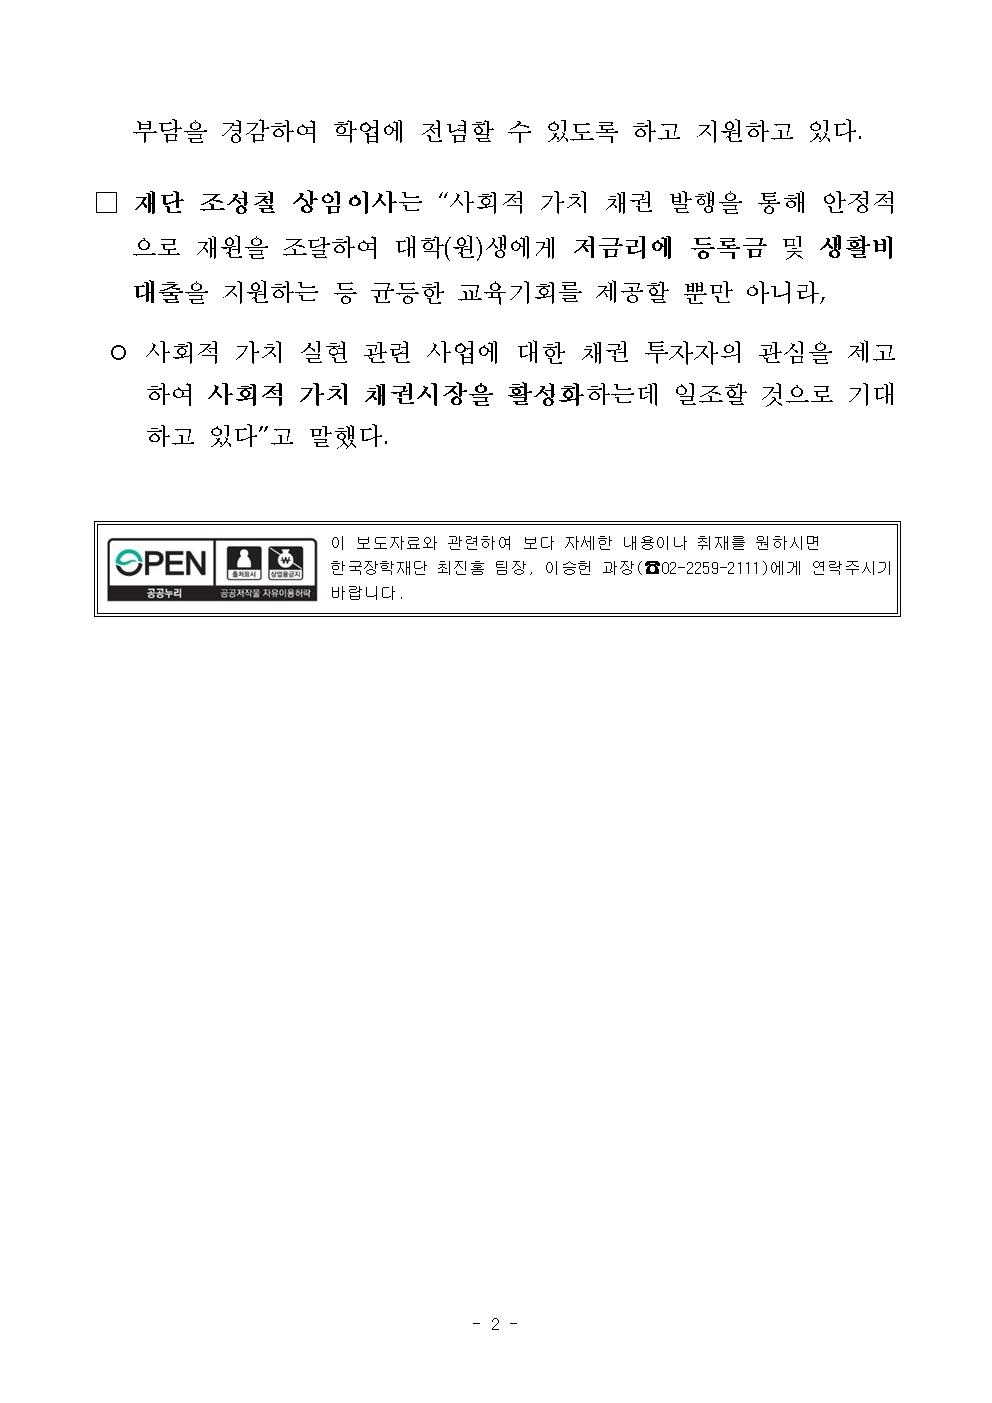 08-12(월)[보도자료] 한국장학재단 모든 채권 사회적 가치 채권(Social Bond)으로 발행002.jpg